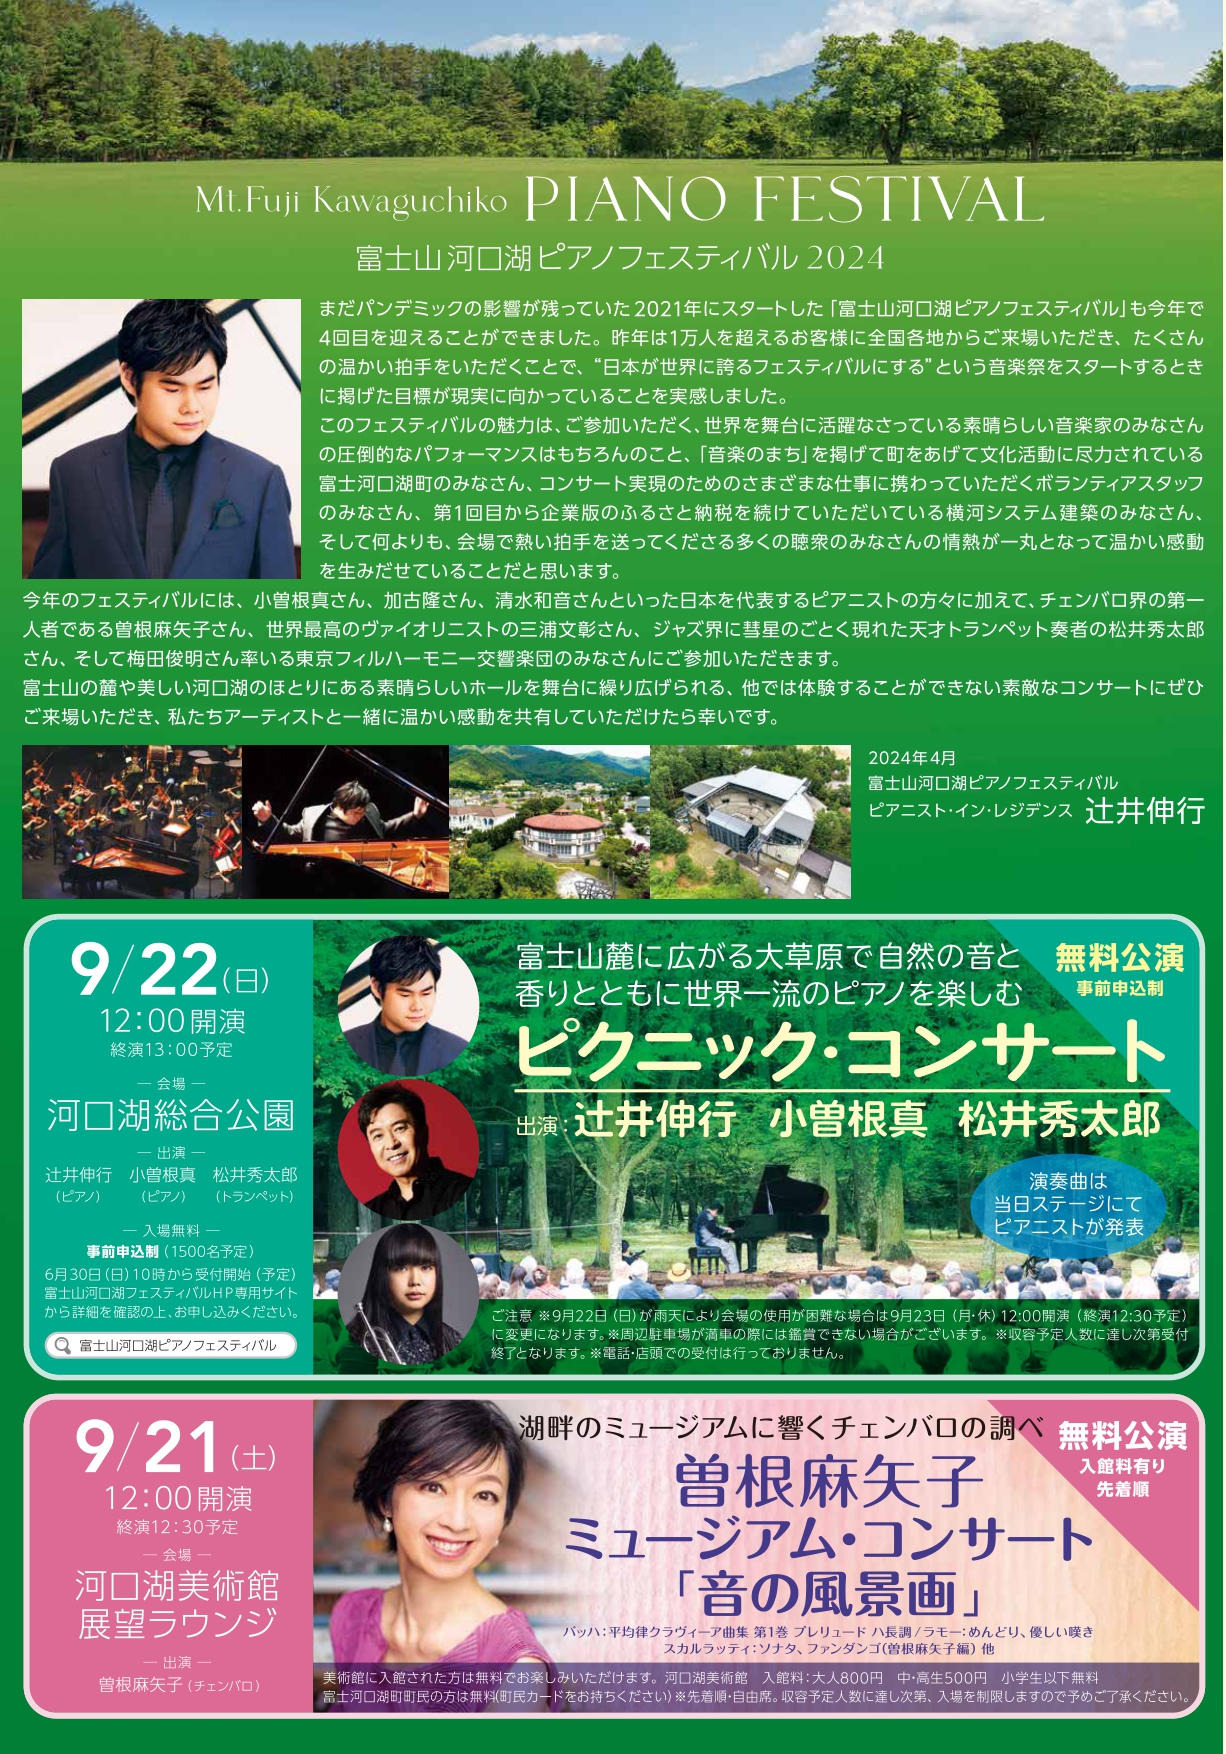 富士山河口湖ピアノフェスティバル2024